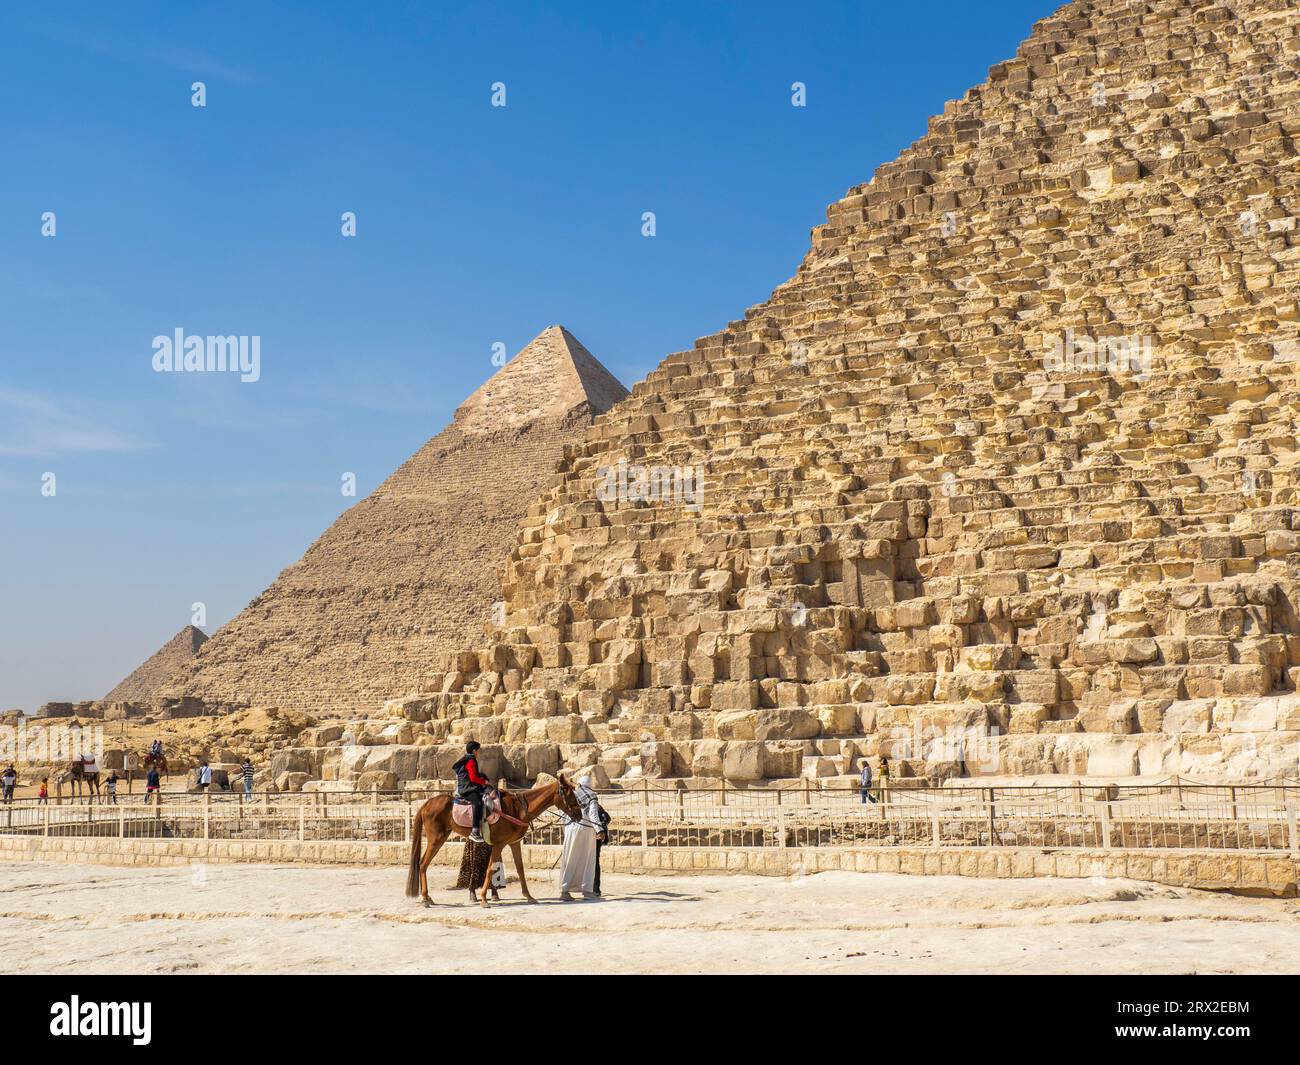 Les touristes à dos de chameau en face de la Grande Pyramide de Gizeh, la plus ancienne des sept merveilles du monde, Gizeh, près du Caire, Egypte Banque D'Images